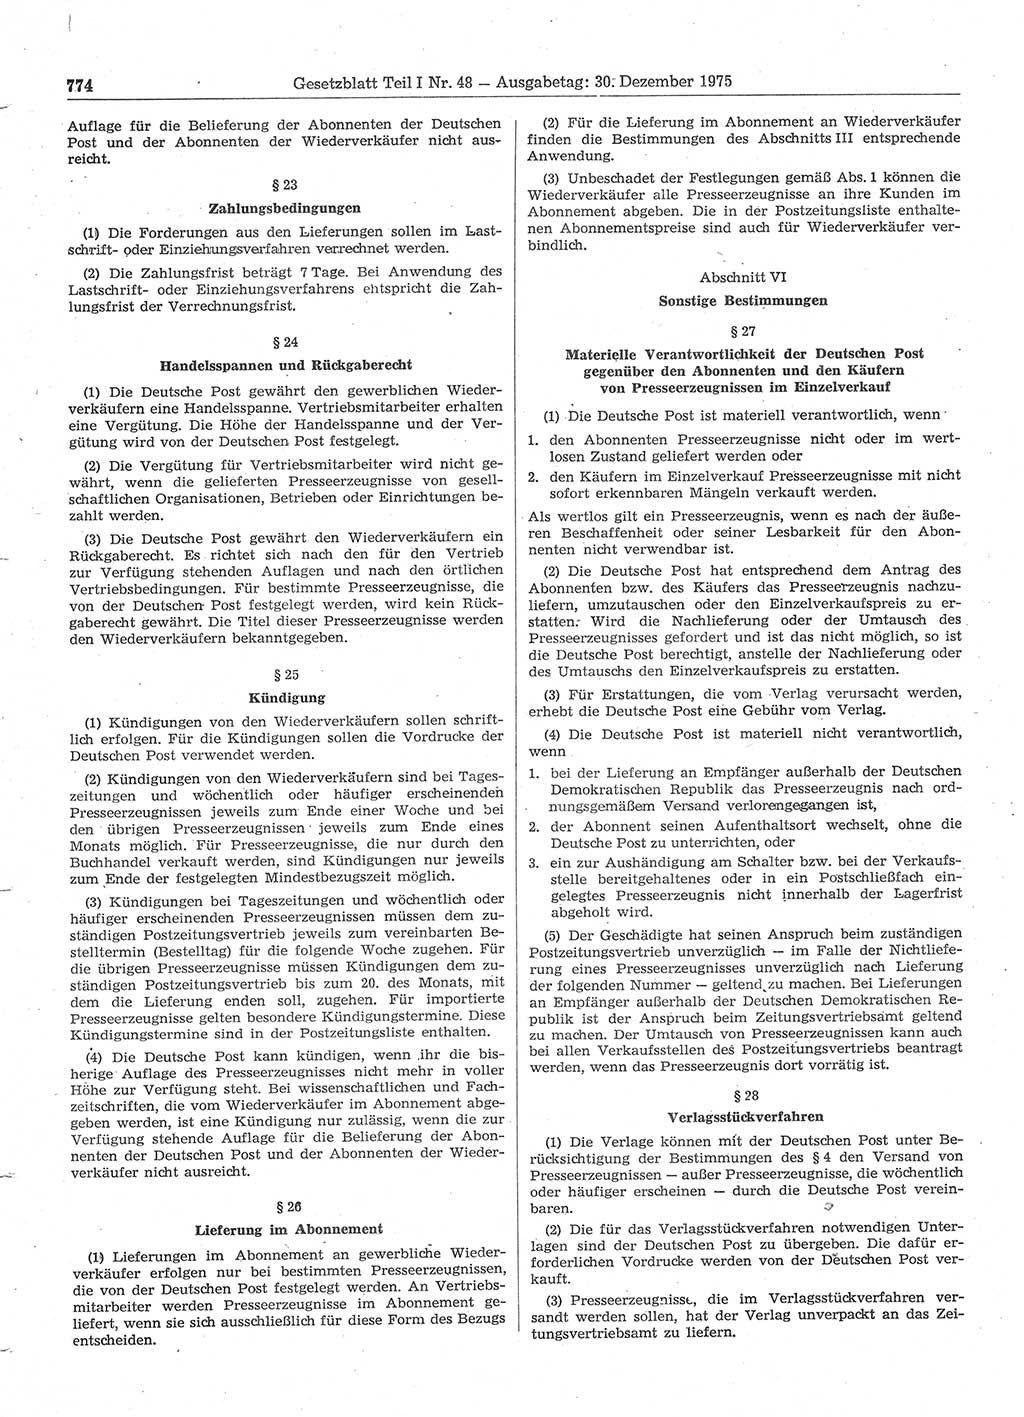 Gesetzblatt (GBl.) der Deutschen Demokratischen Republik (DDR) Teil Ⅰ 1975, Seite 774 (GBl. DDR Ⅰ 1975, S. 774)